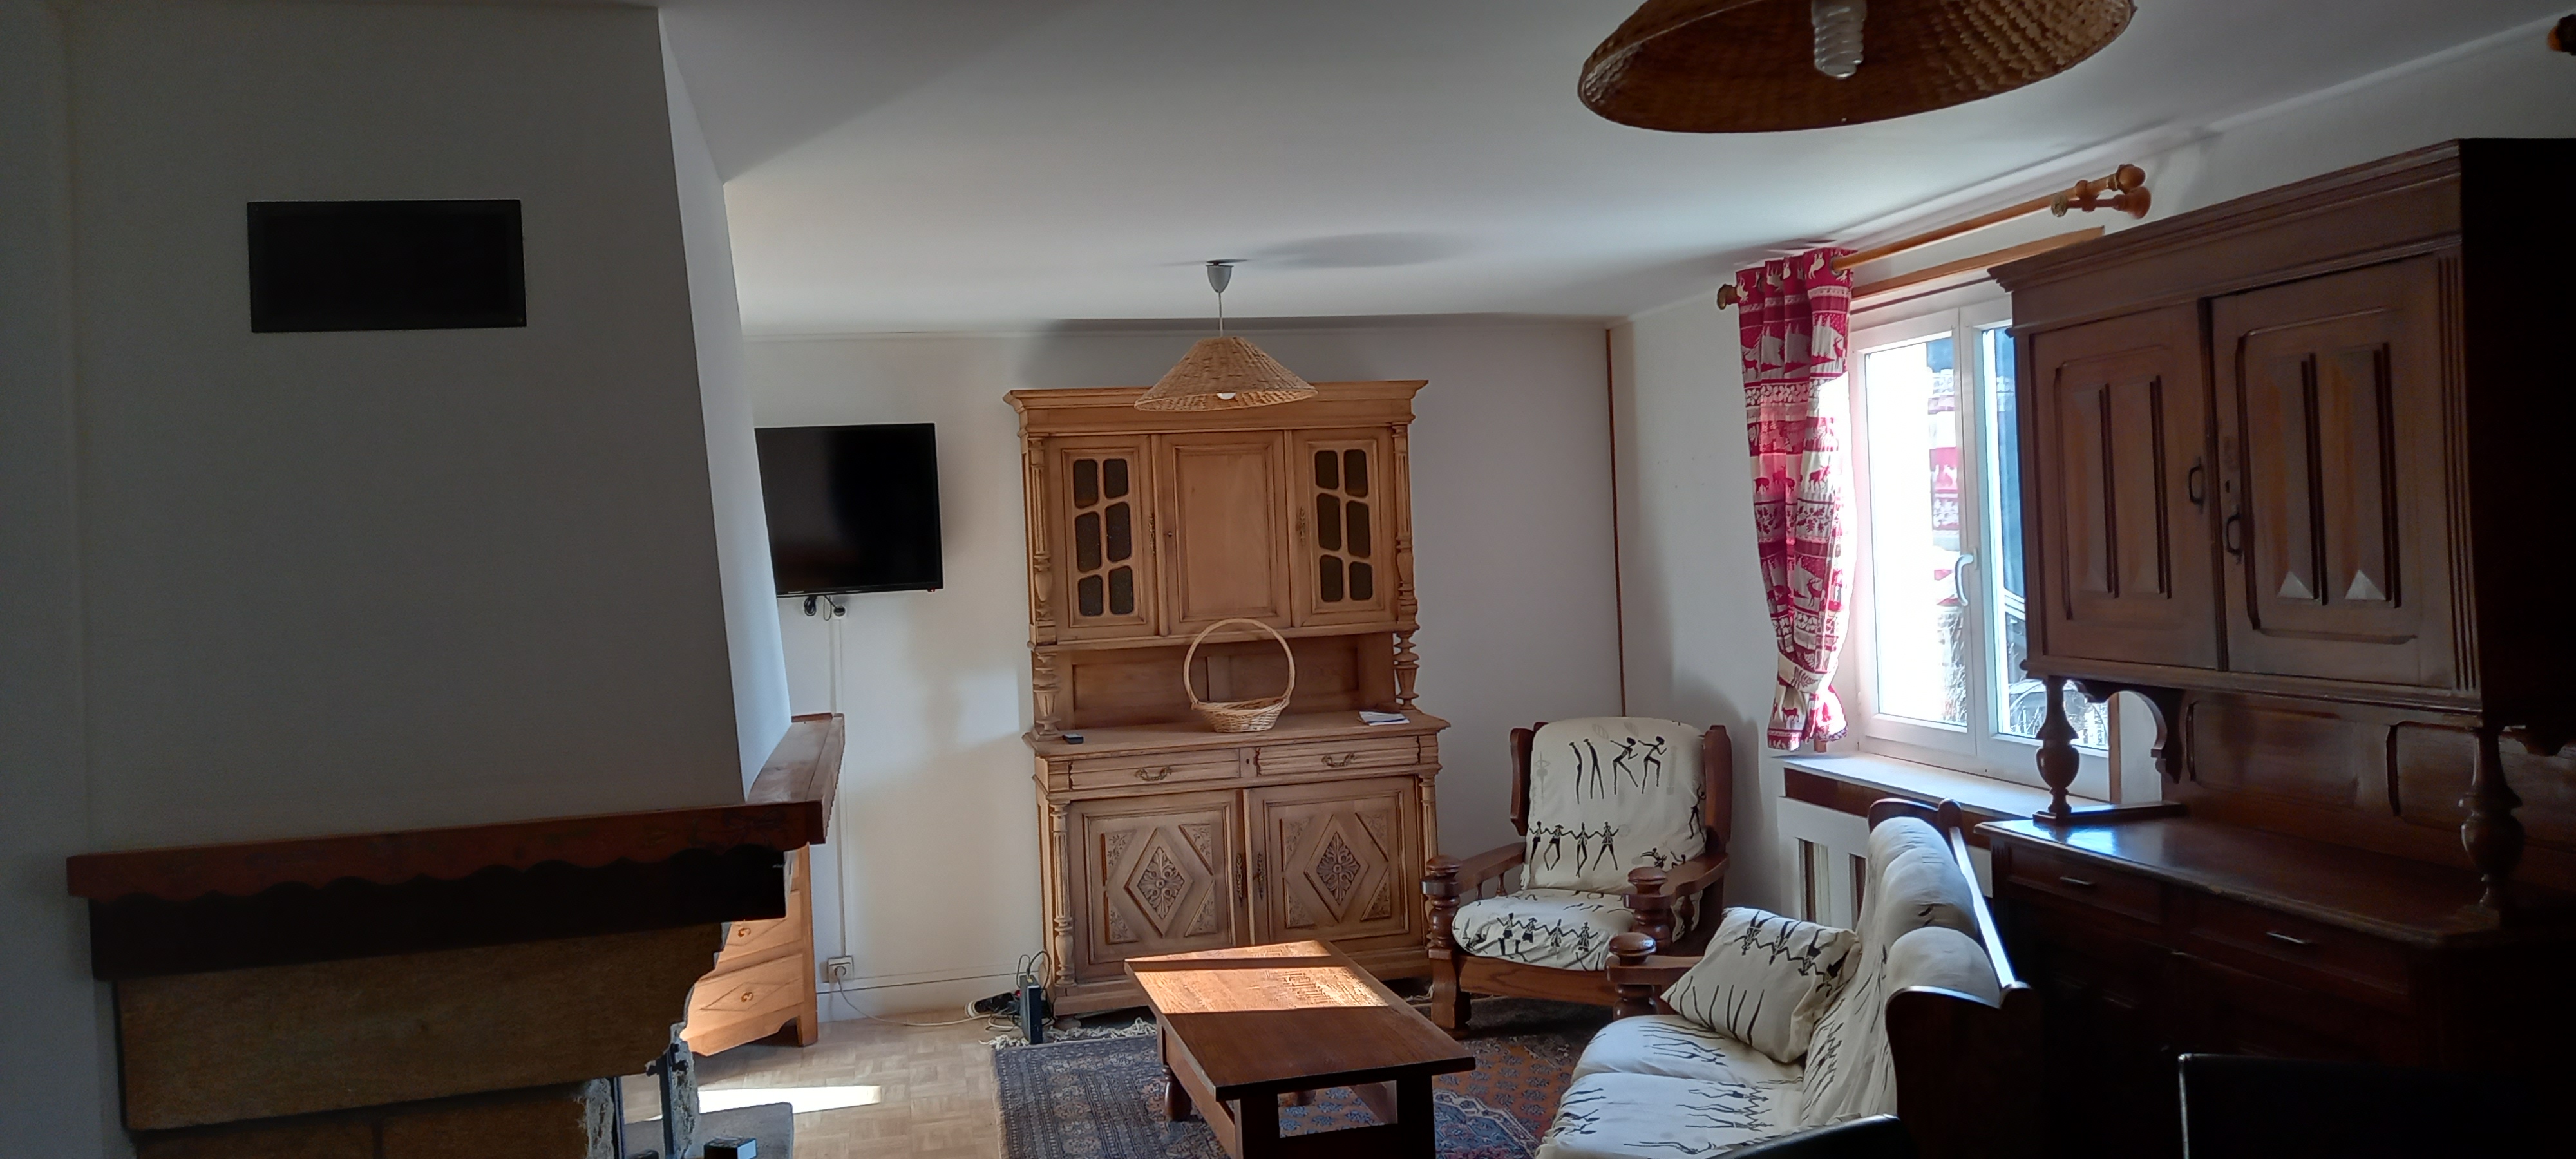 Gîte meublé avec salon-séjour canapé et cheminée